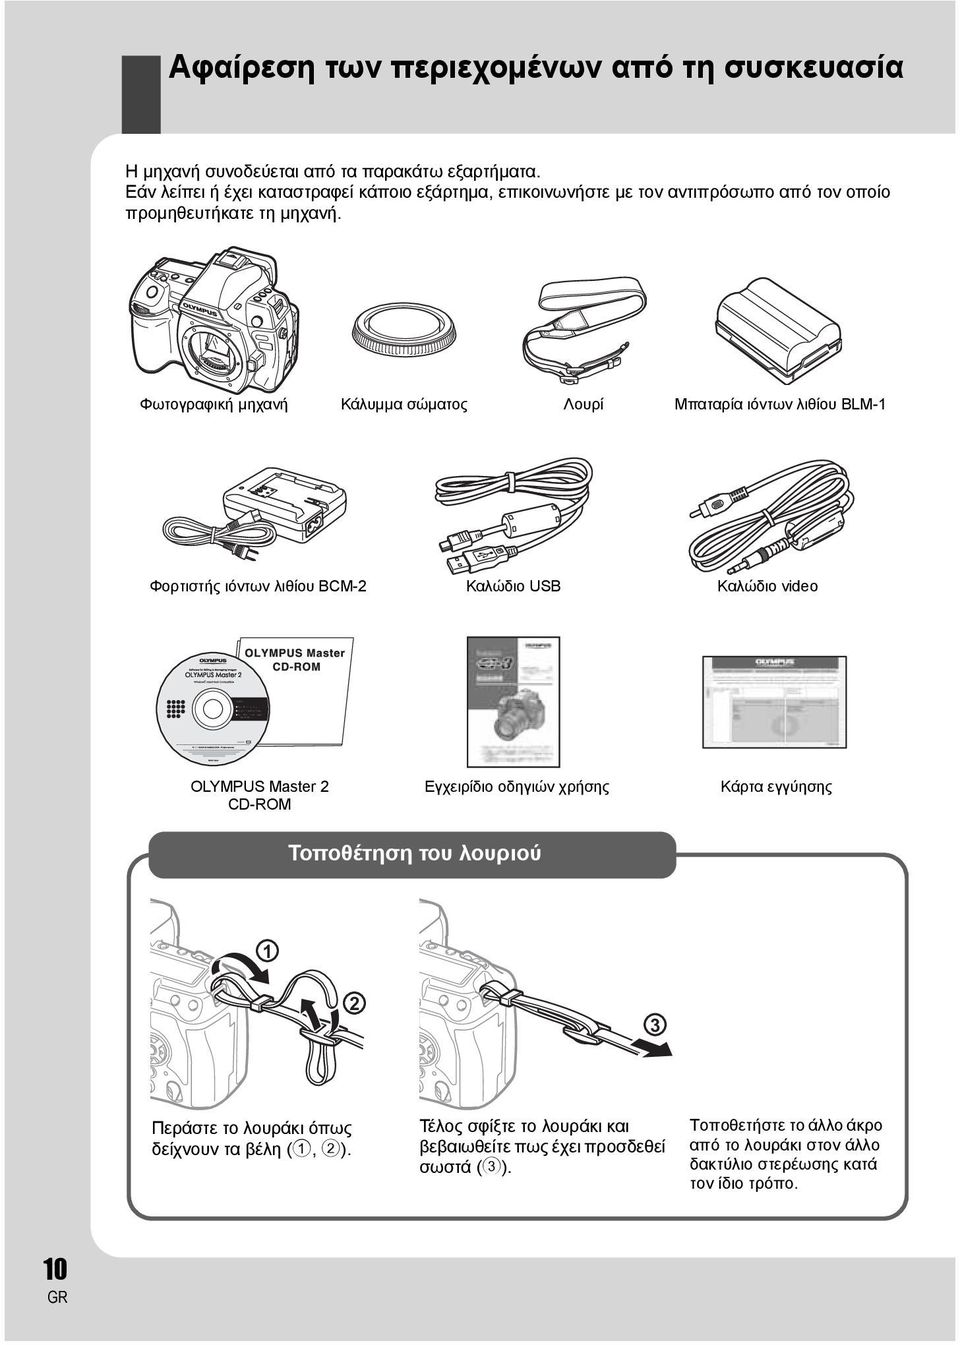 Φωτογραφική μηχανή Κάλυμμα σώματος Λουρί Μπαταρία ιόντων λιθίου BLM-1 Φορτιστής ιόντων λιθίου BCM-2 Καλώδιο USB Καλώδιο video OLYMPUS Master 2 CD-ROM Εγχειρίδιο